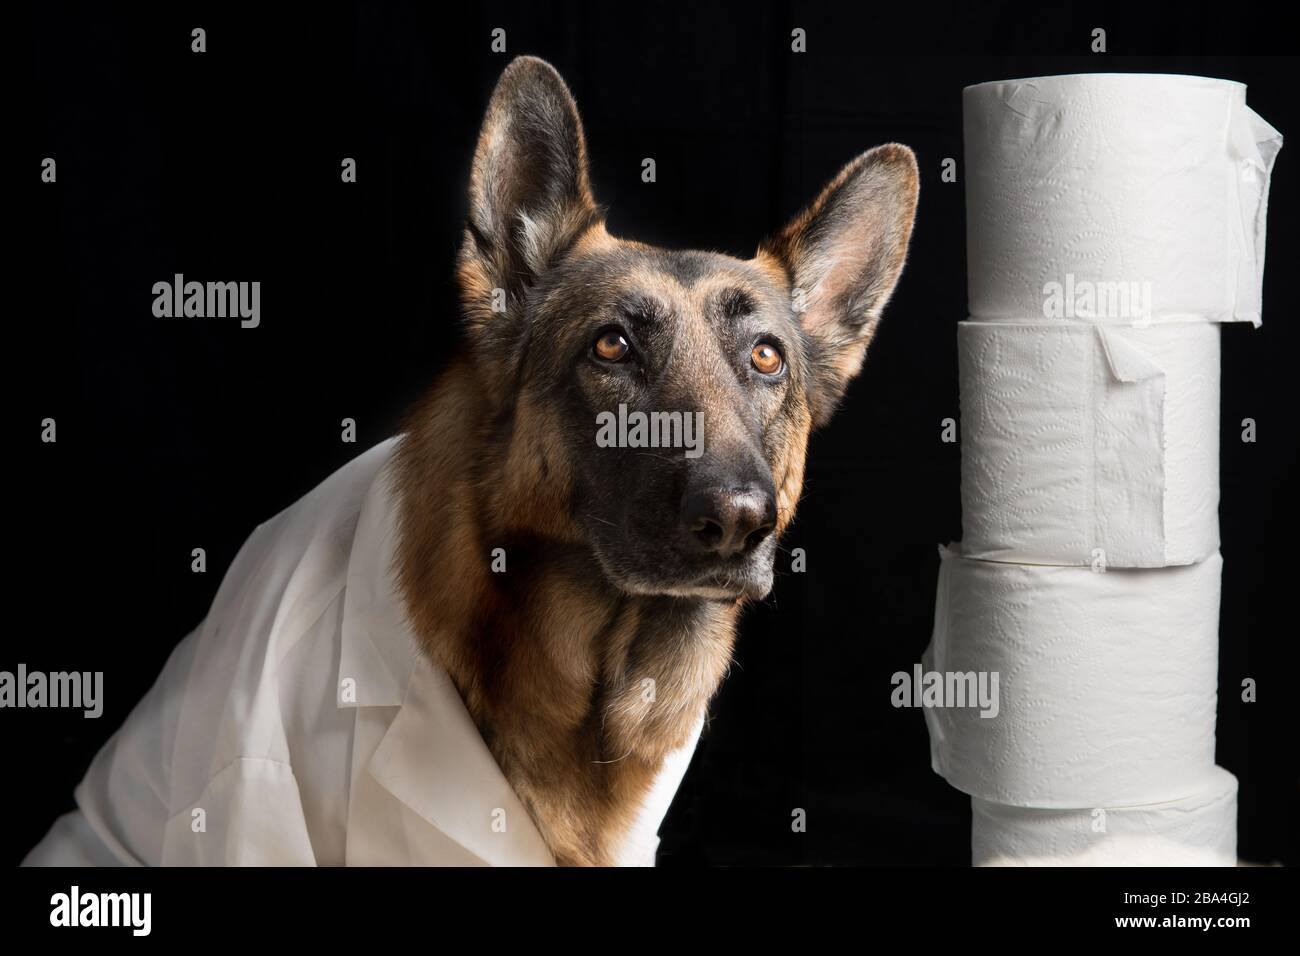 Revêtement de recouvrement du virus Corona sur le chien avec papier toilette. Le Berger allemand concept sur les animaux contre le coronavirus covid19 Banque D'Images